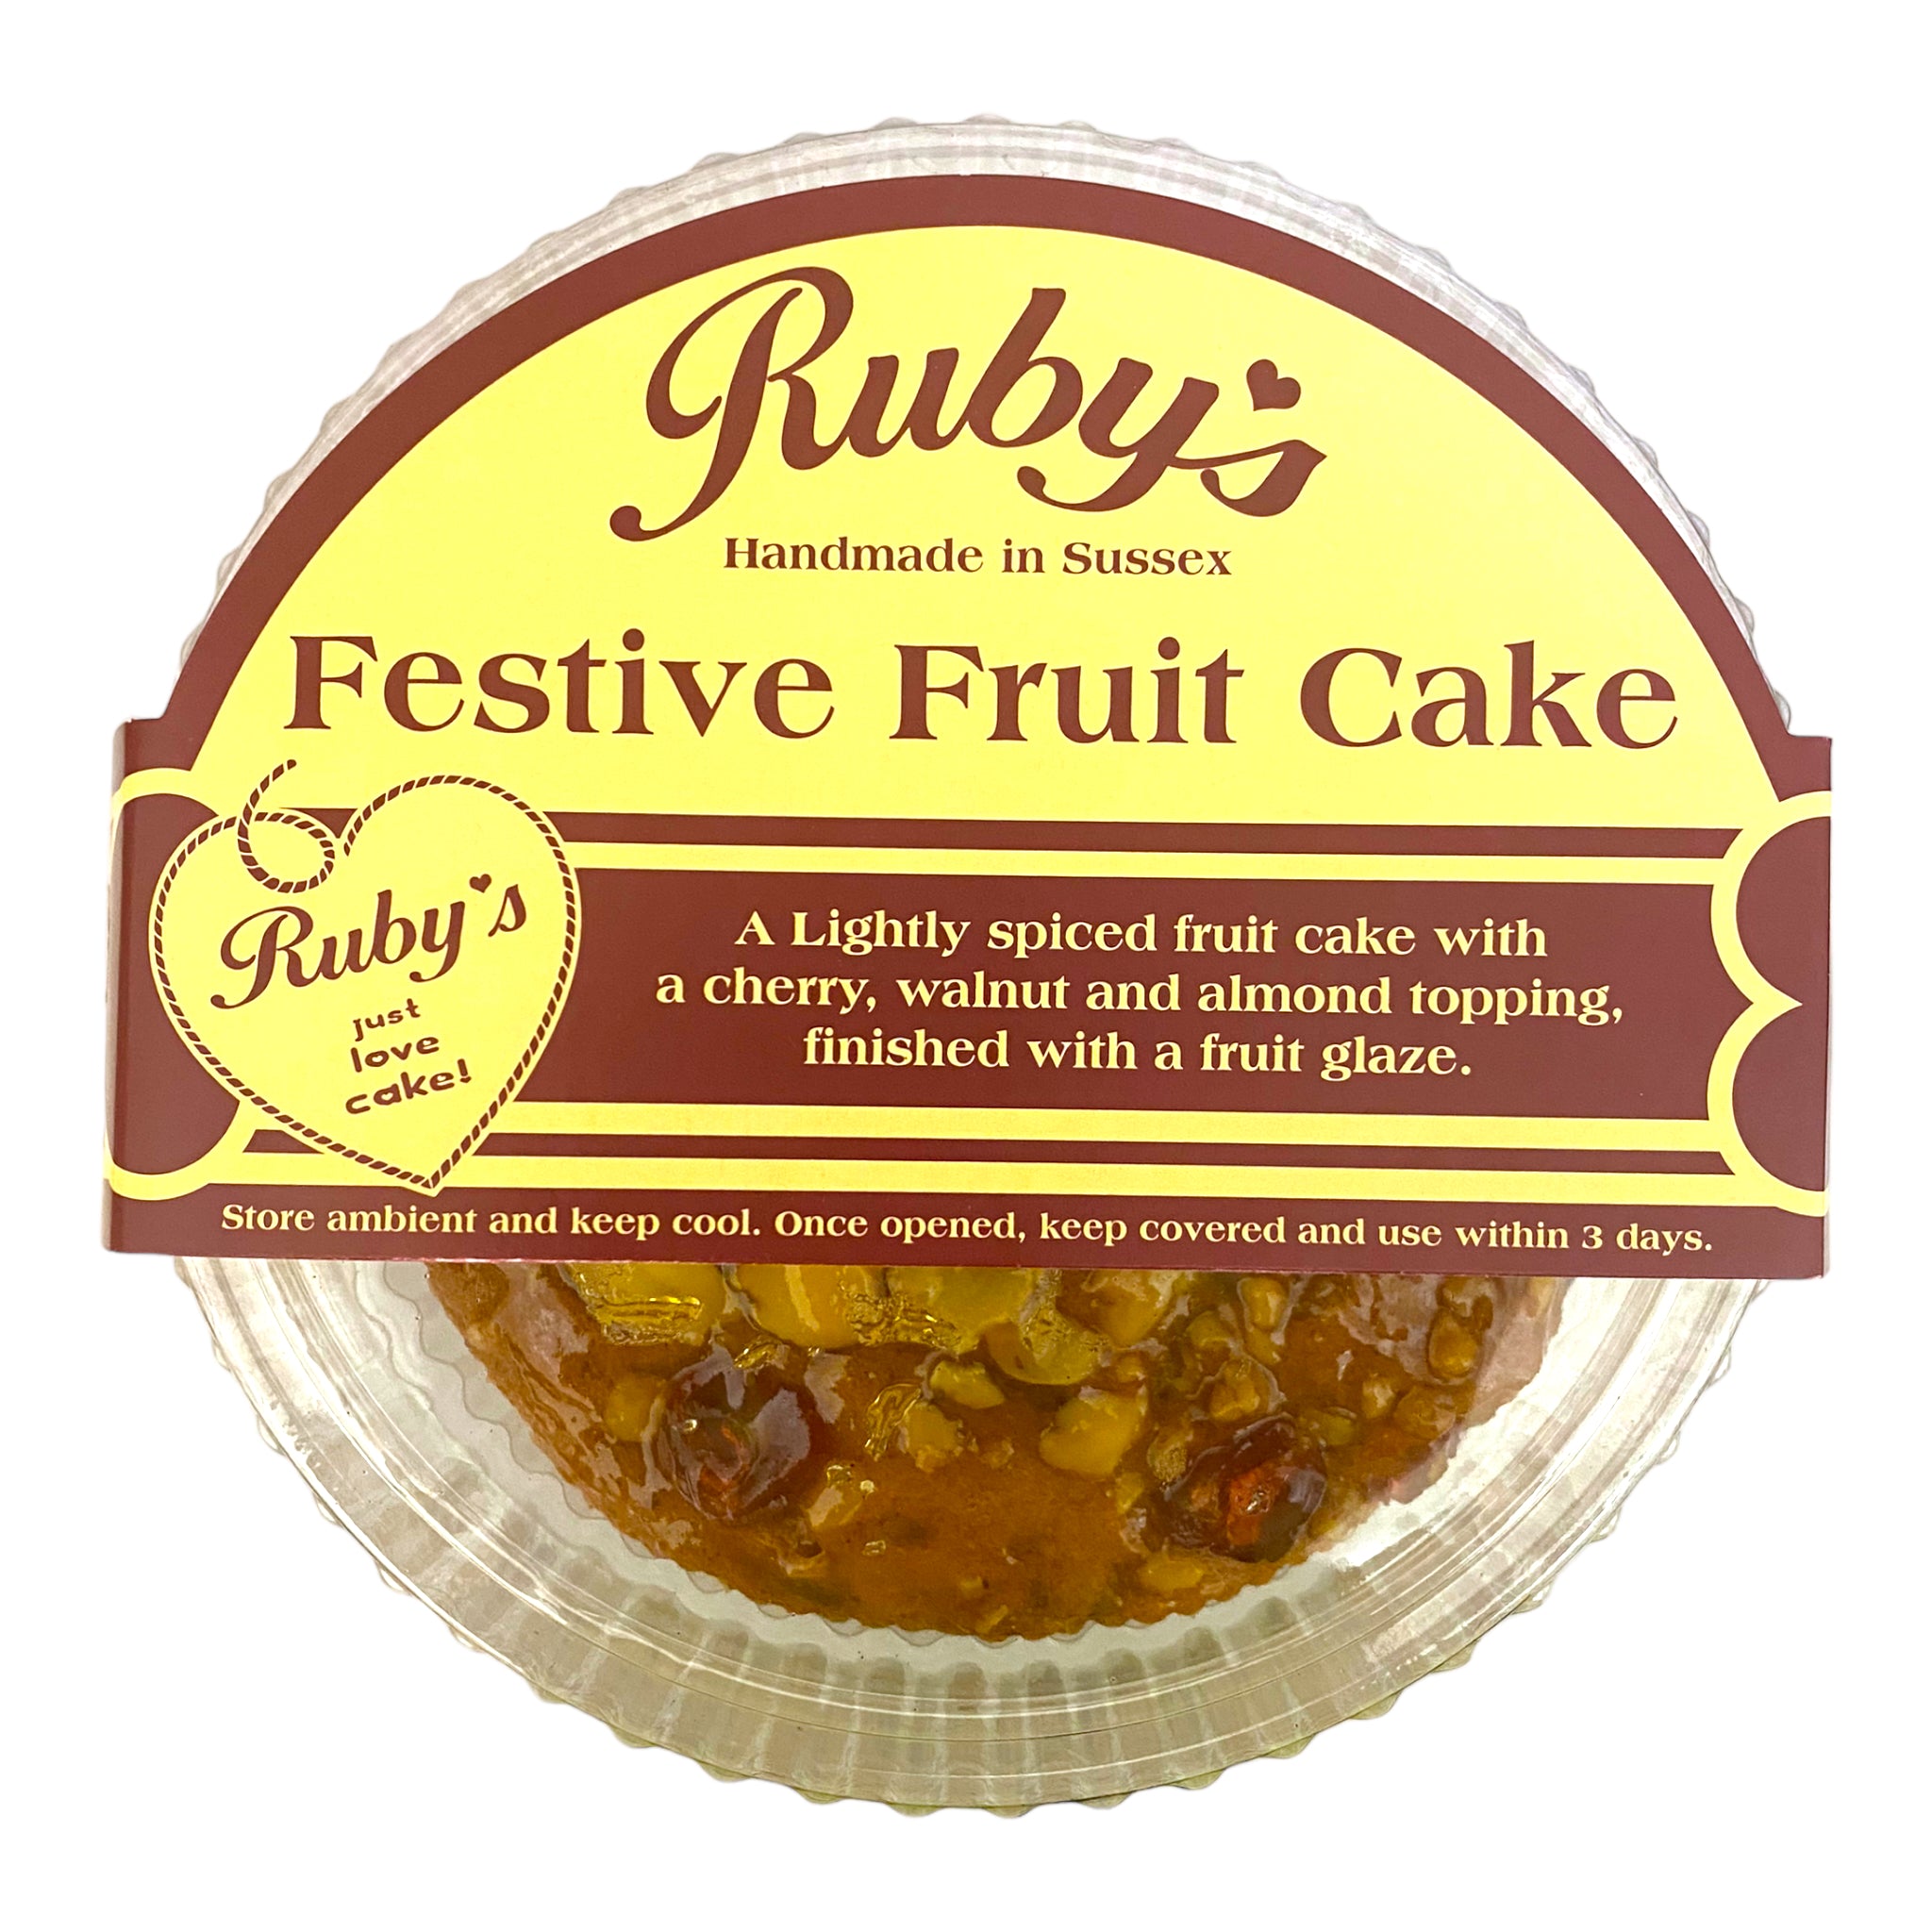 Ruby's Festive Fruit Cake